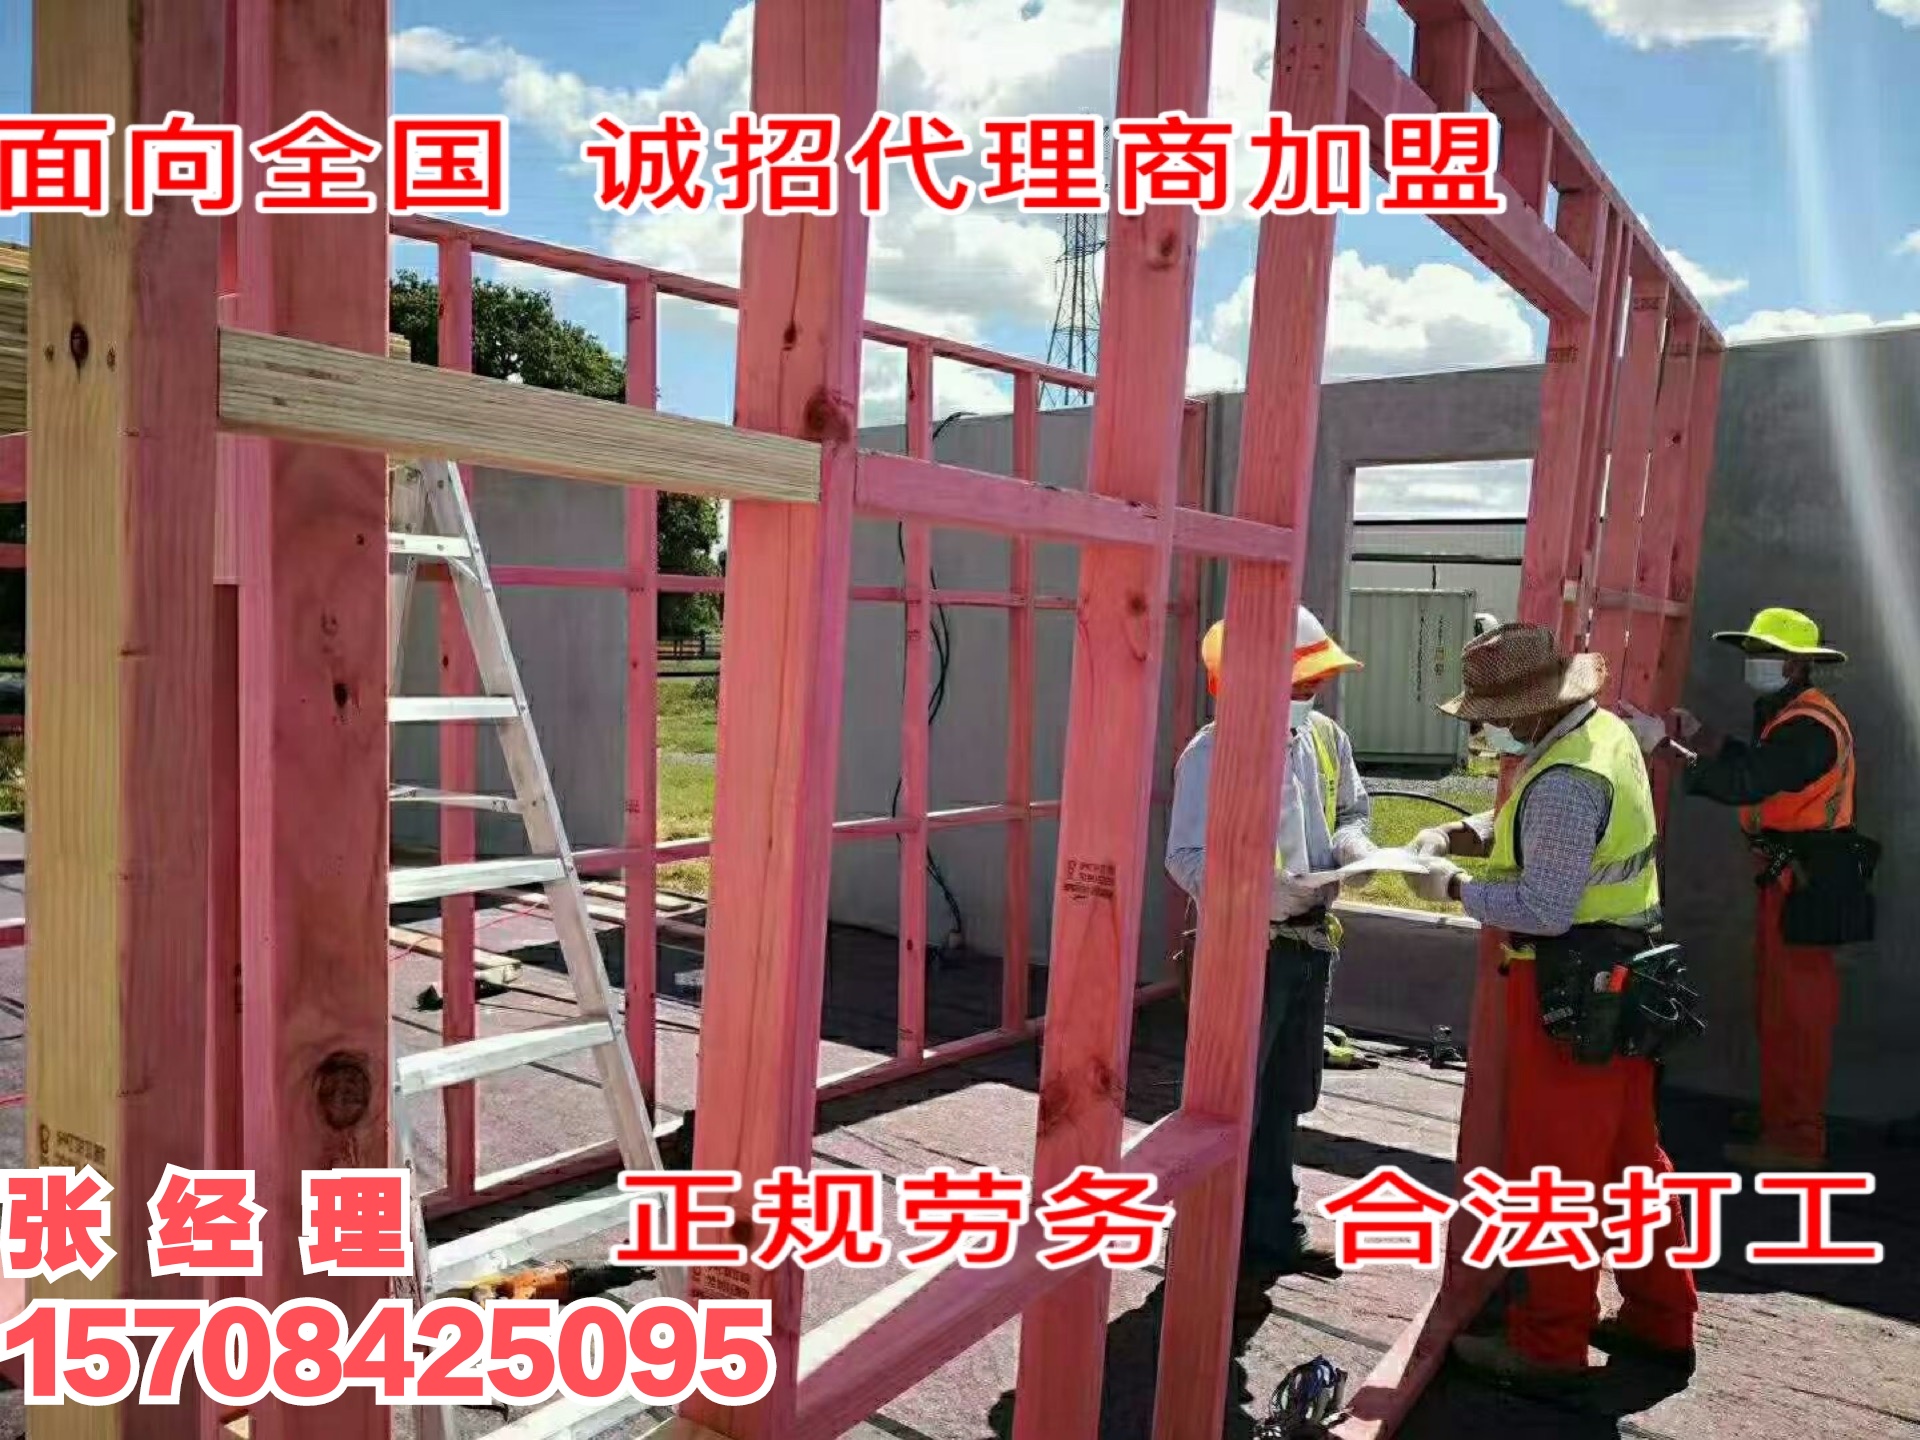 重庆武隆有实力的出国劳务公司招油漆工.瓷砖工澳大利亚-俄罗斯